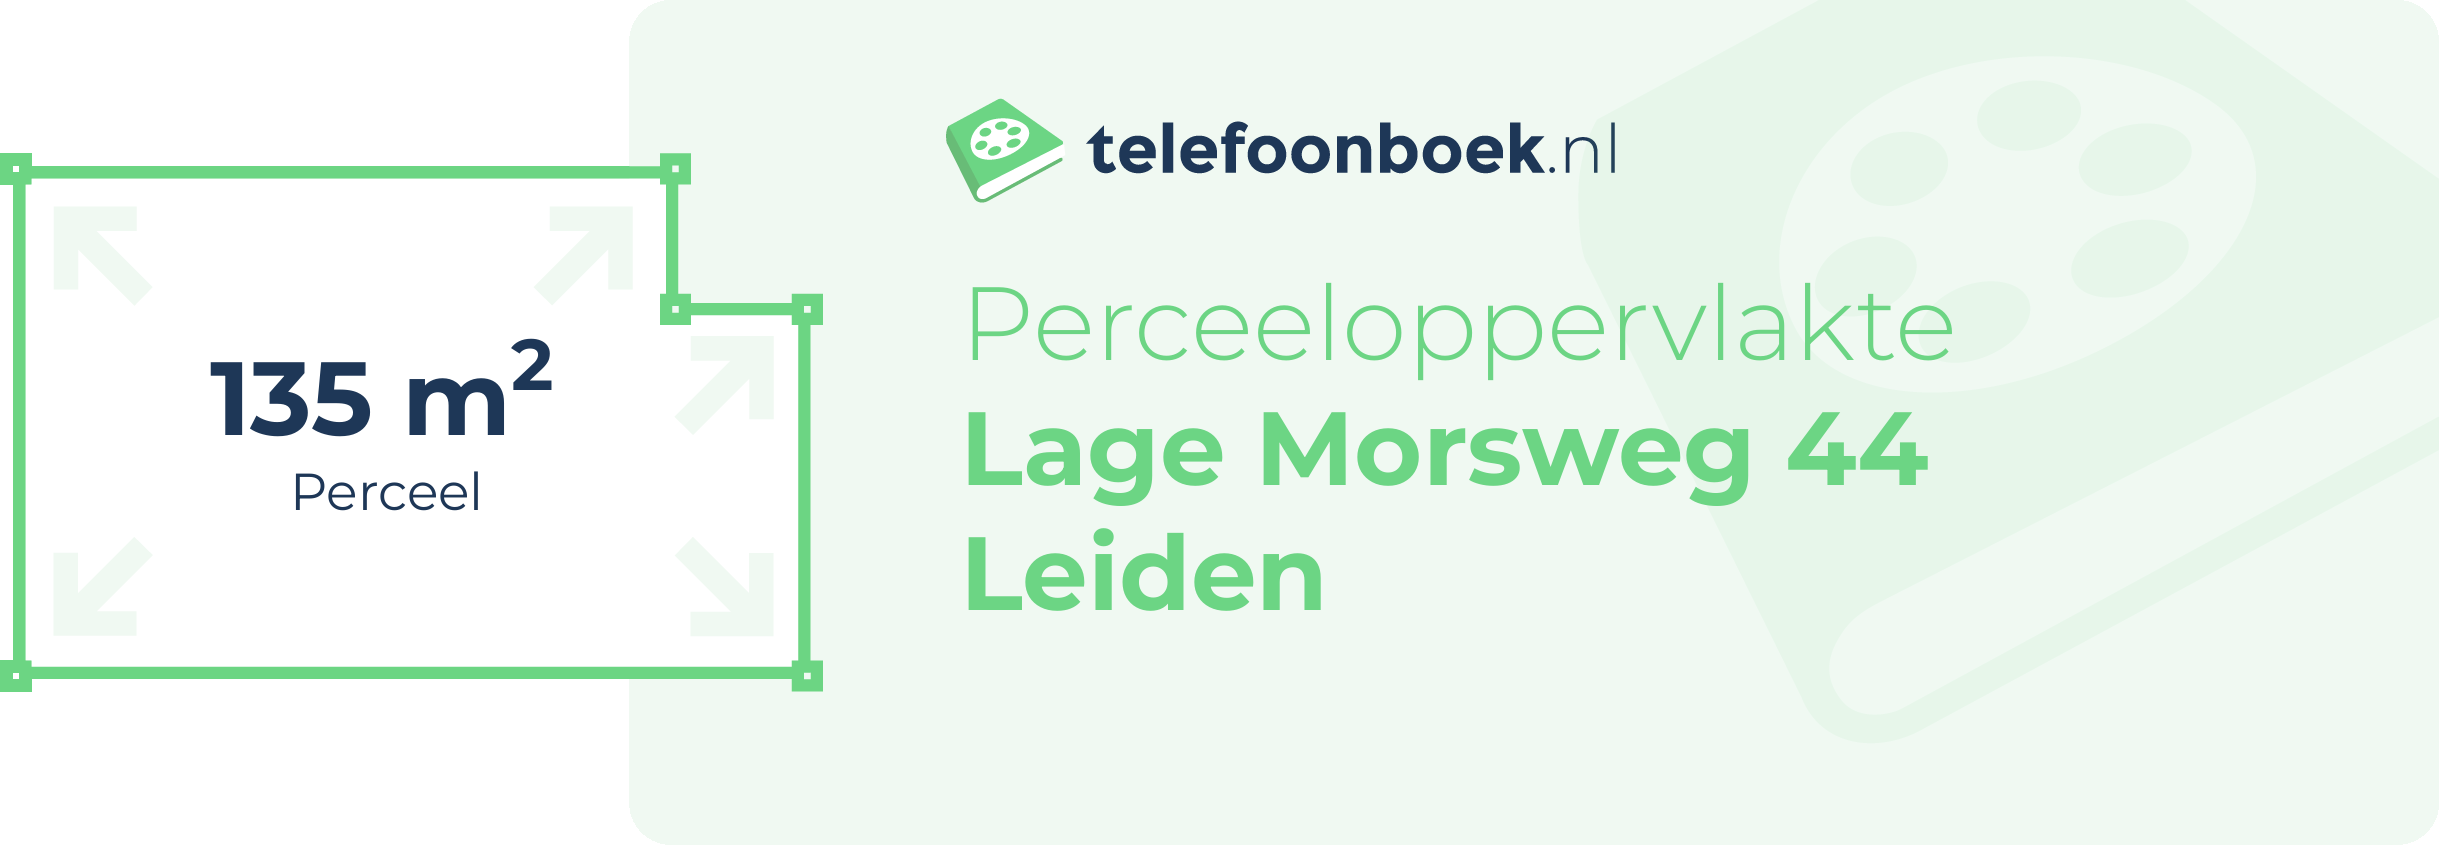 Perceeloppervlakte Lage Morsweg 44 Leiden